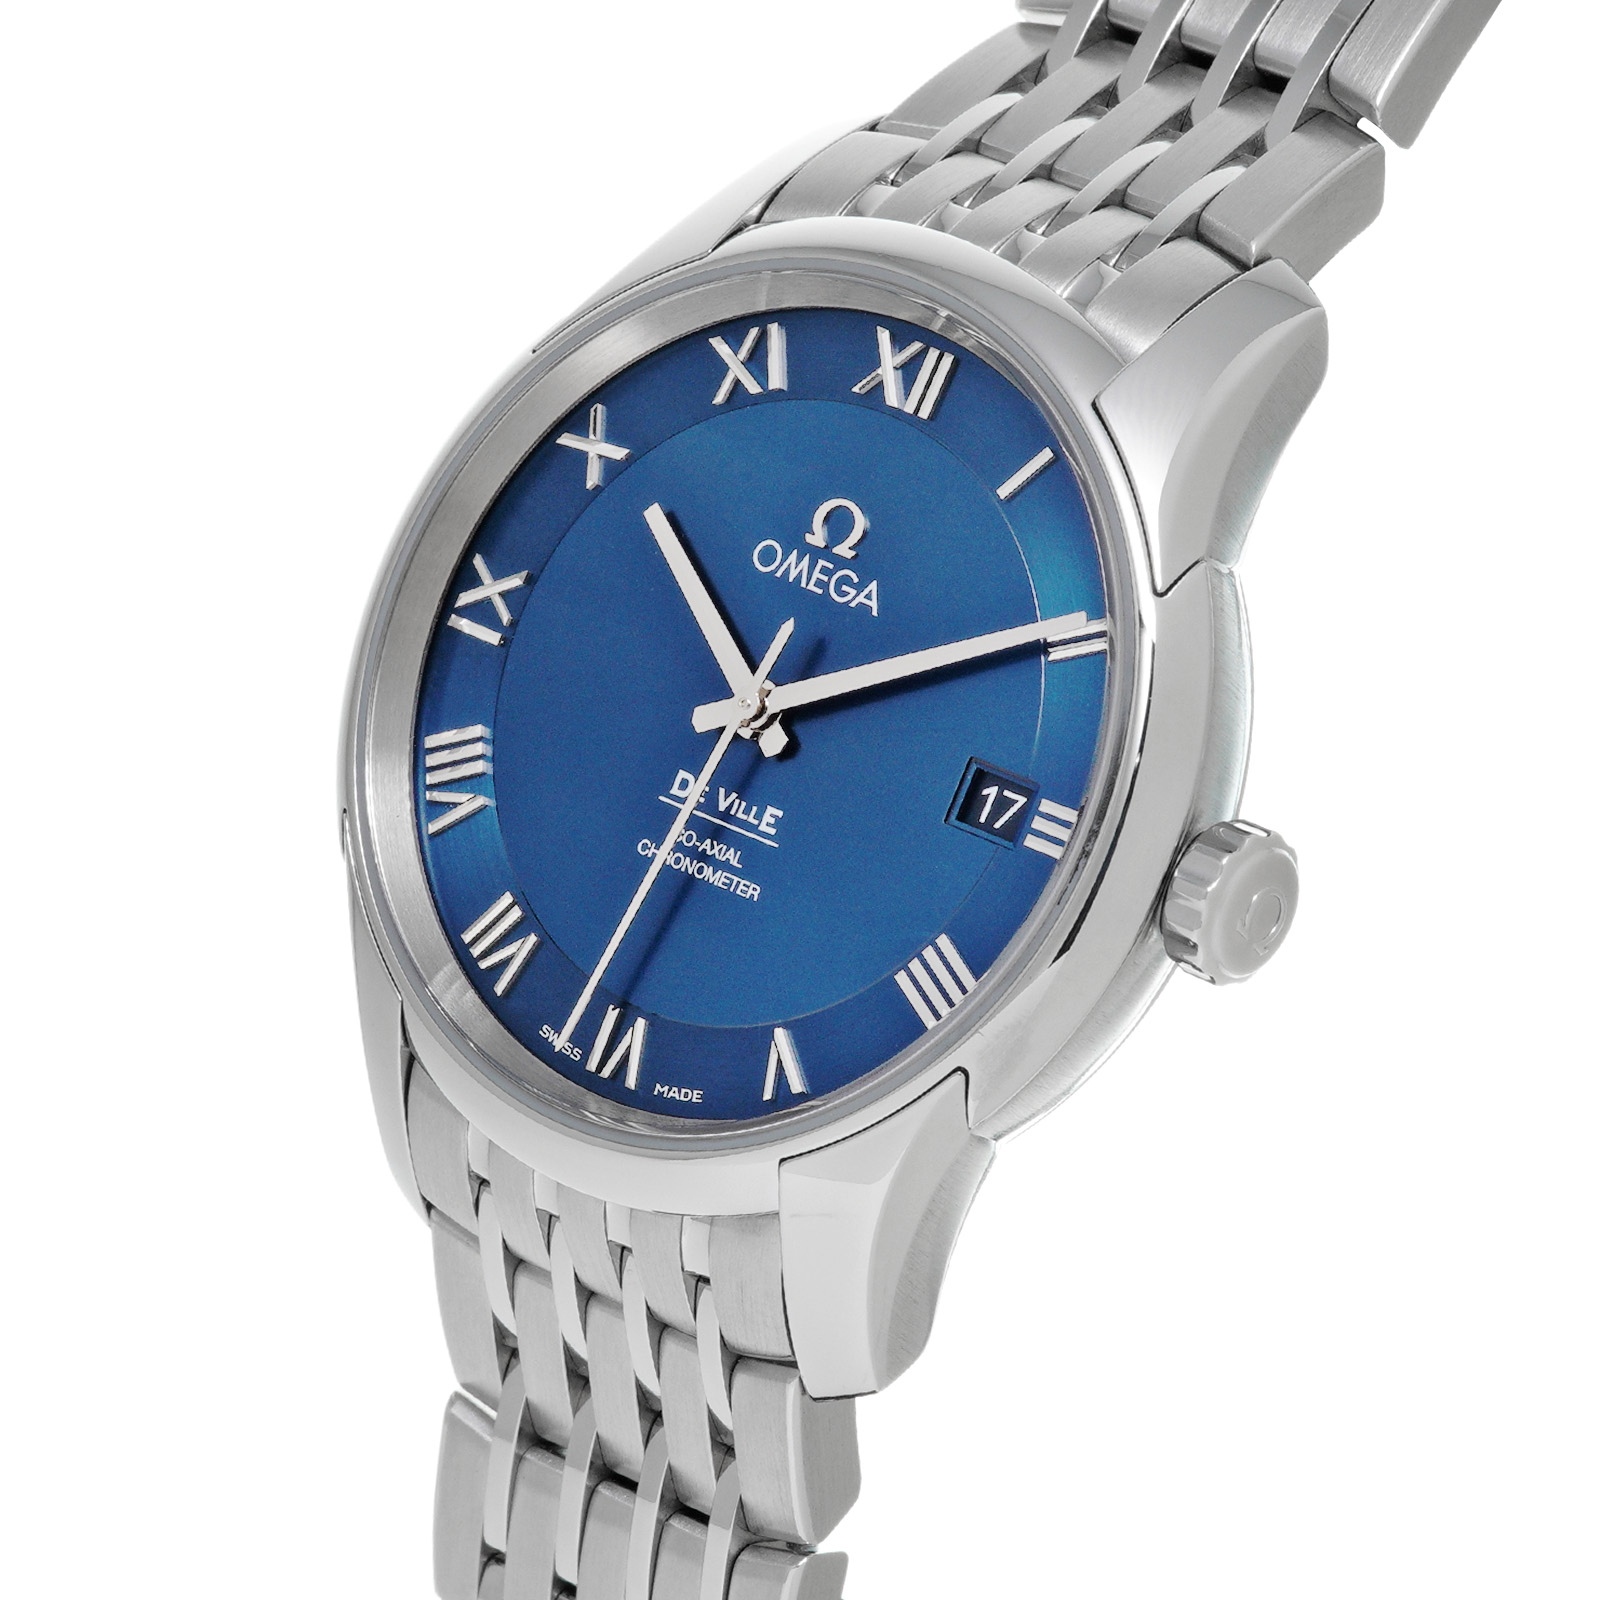 ネットショッピング 中古 オメガ OMEGA 434.10.41.21.03.001 ライトブルー メンズ 腕時計 買い取り:209378円  腕時計 (アナログ)